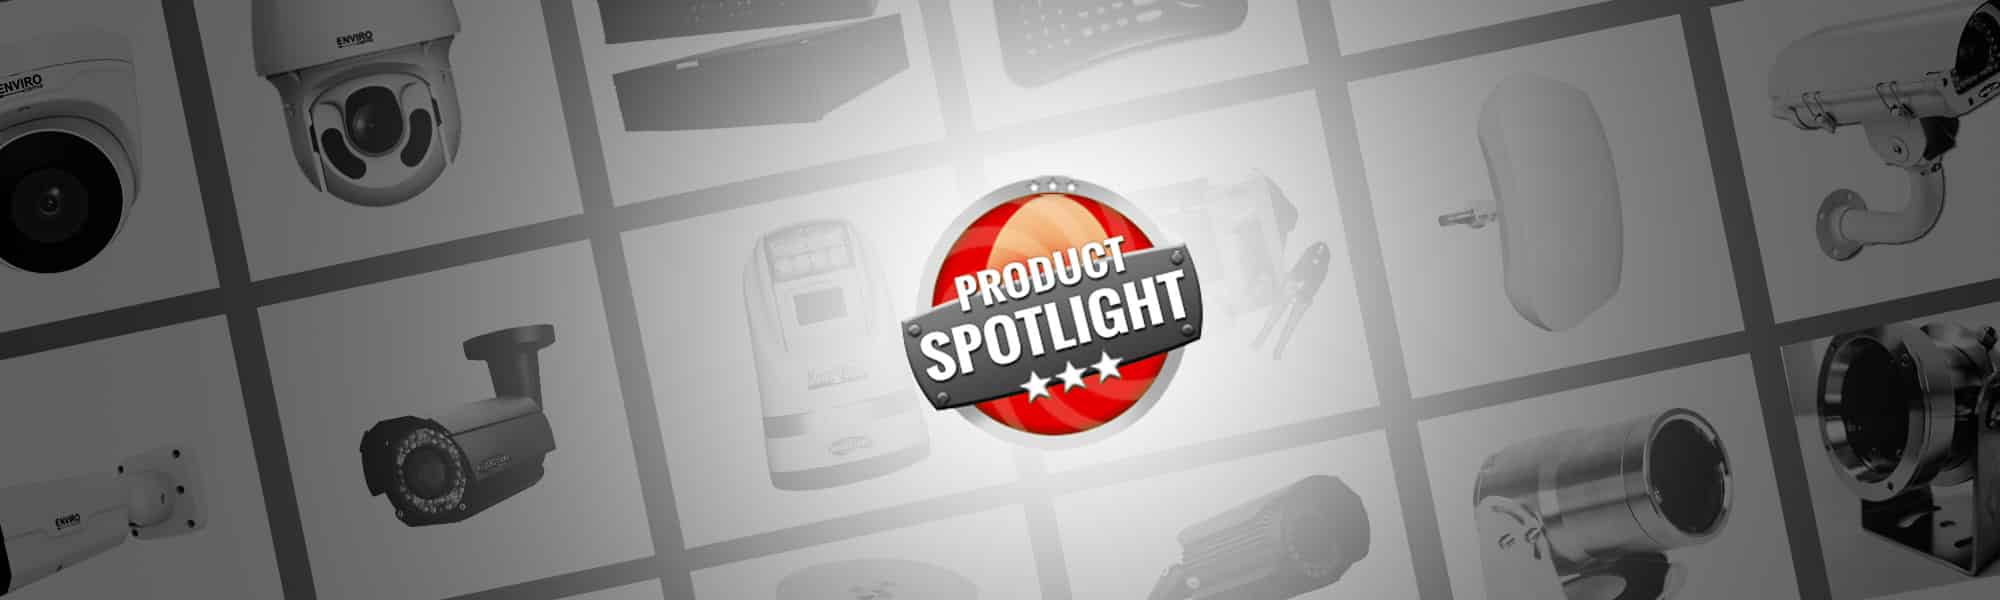 ProductSpotlight | EnviroCams